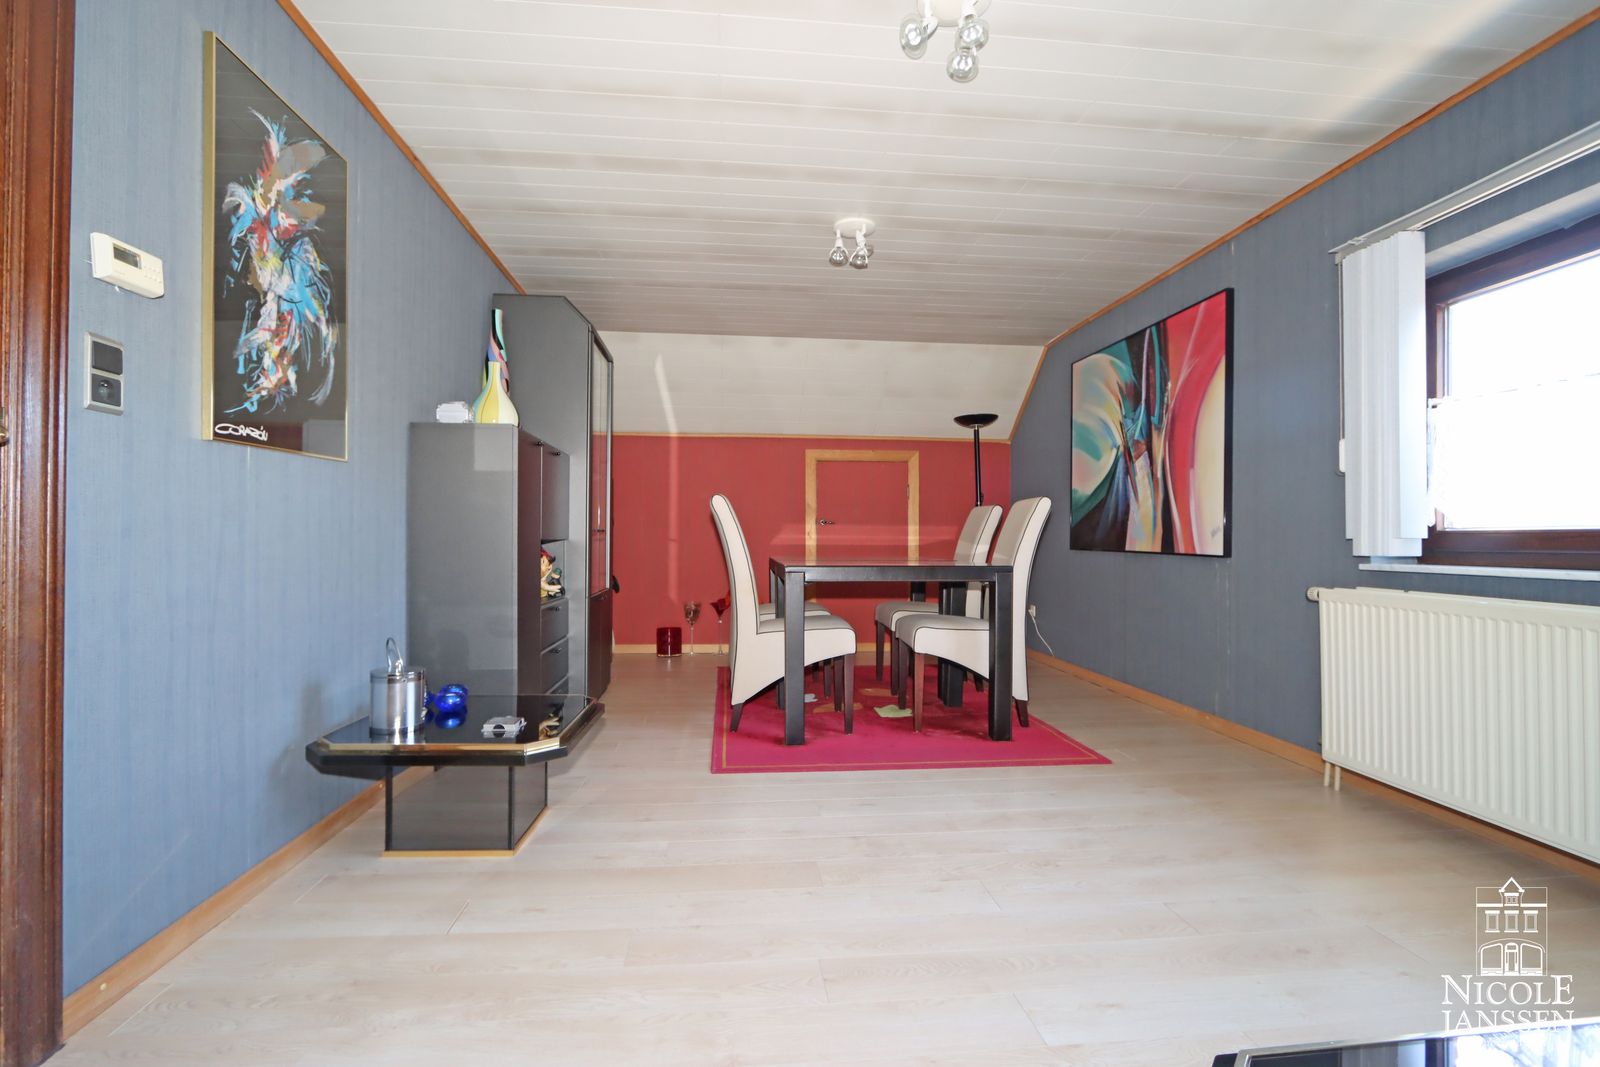 23 Nicole Janssen huis te koop Dijkweg 1D Dilsen (appartement boven woonkamer)_bewerkt-1.jpg